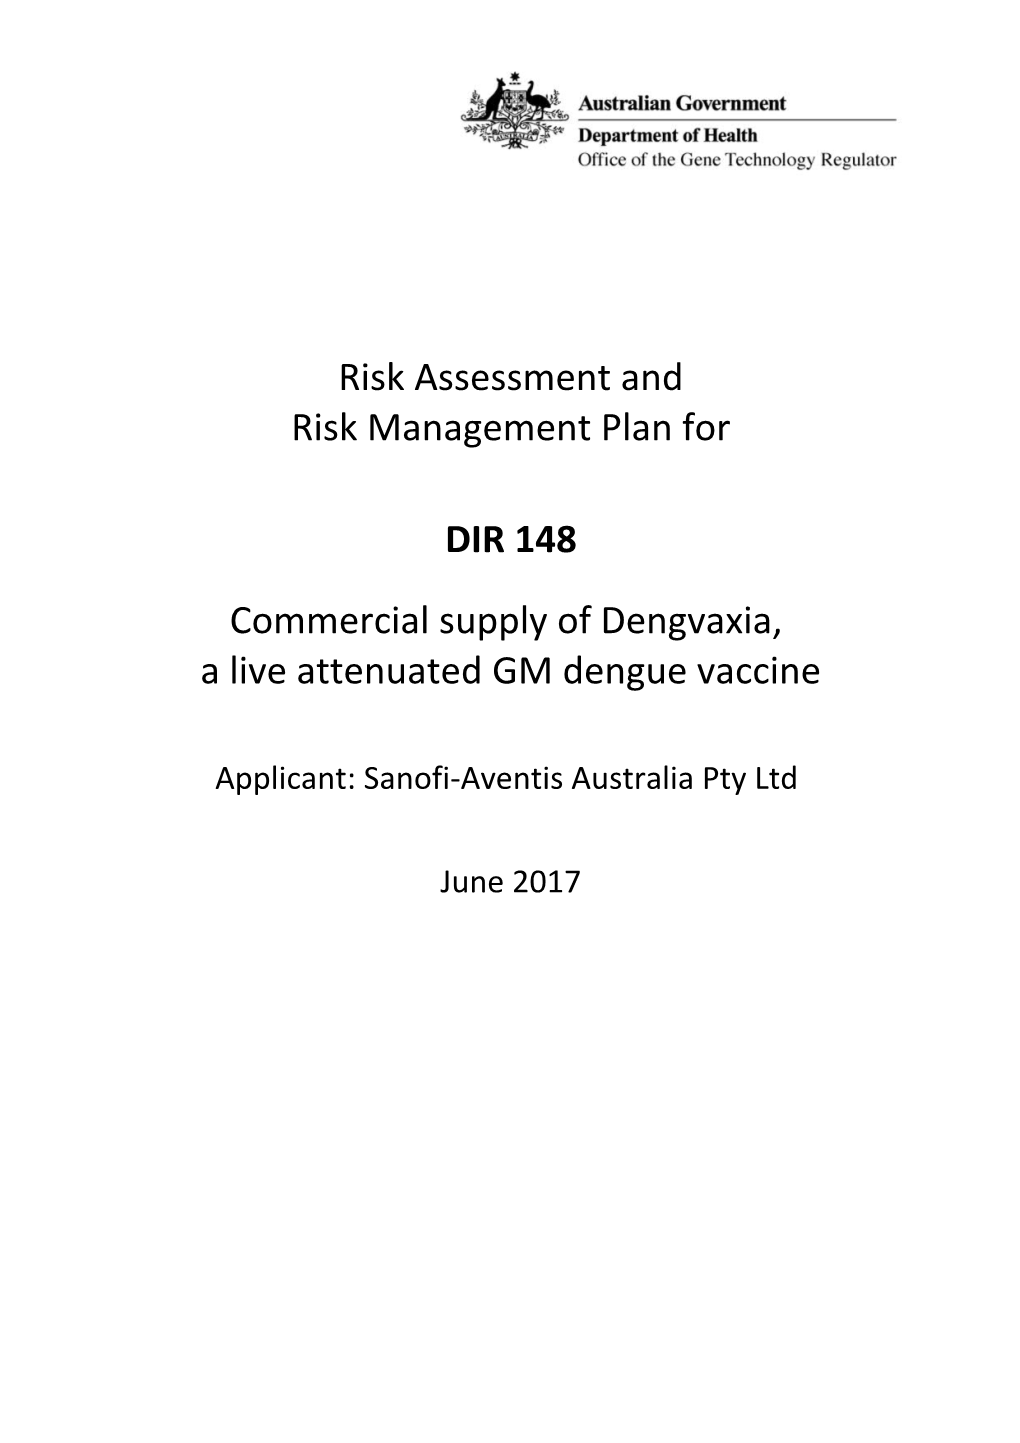 DIR 148 - Full Risk Assessment and Risk Managemnt Plan